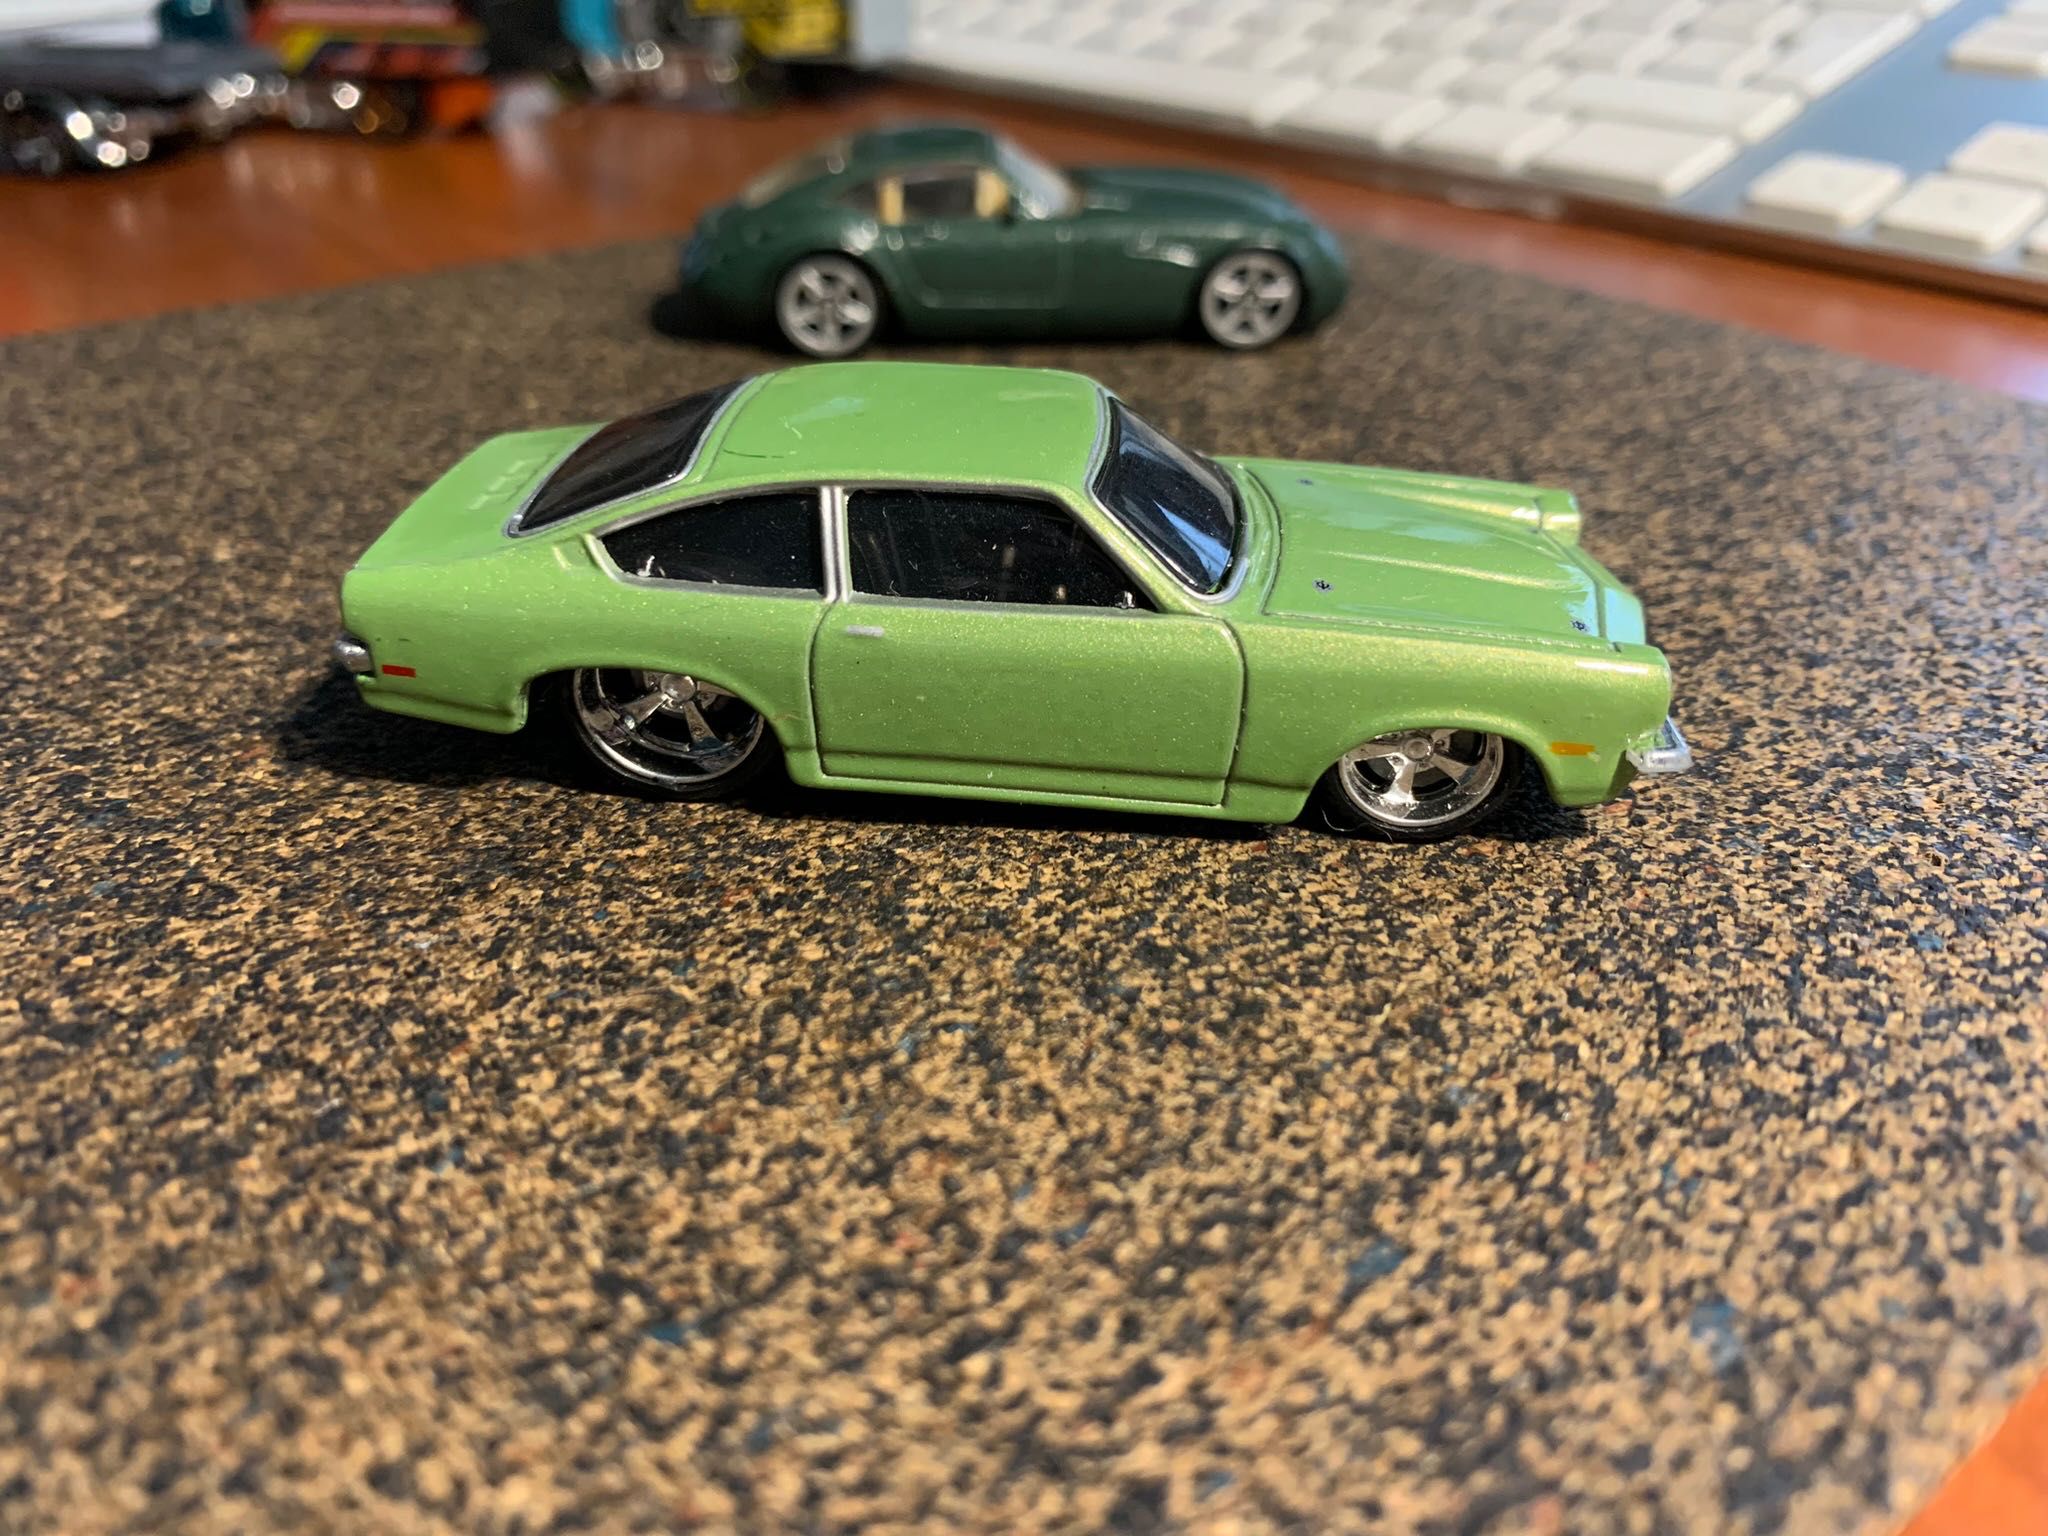 Chevrolet Vega, Green, Maisto 1/64 Hot Wheels premium rlc